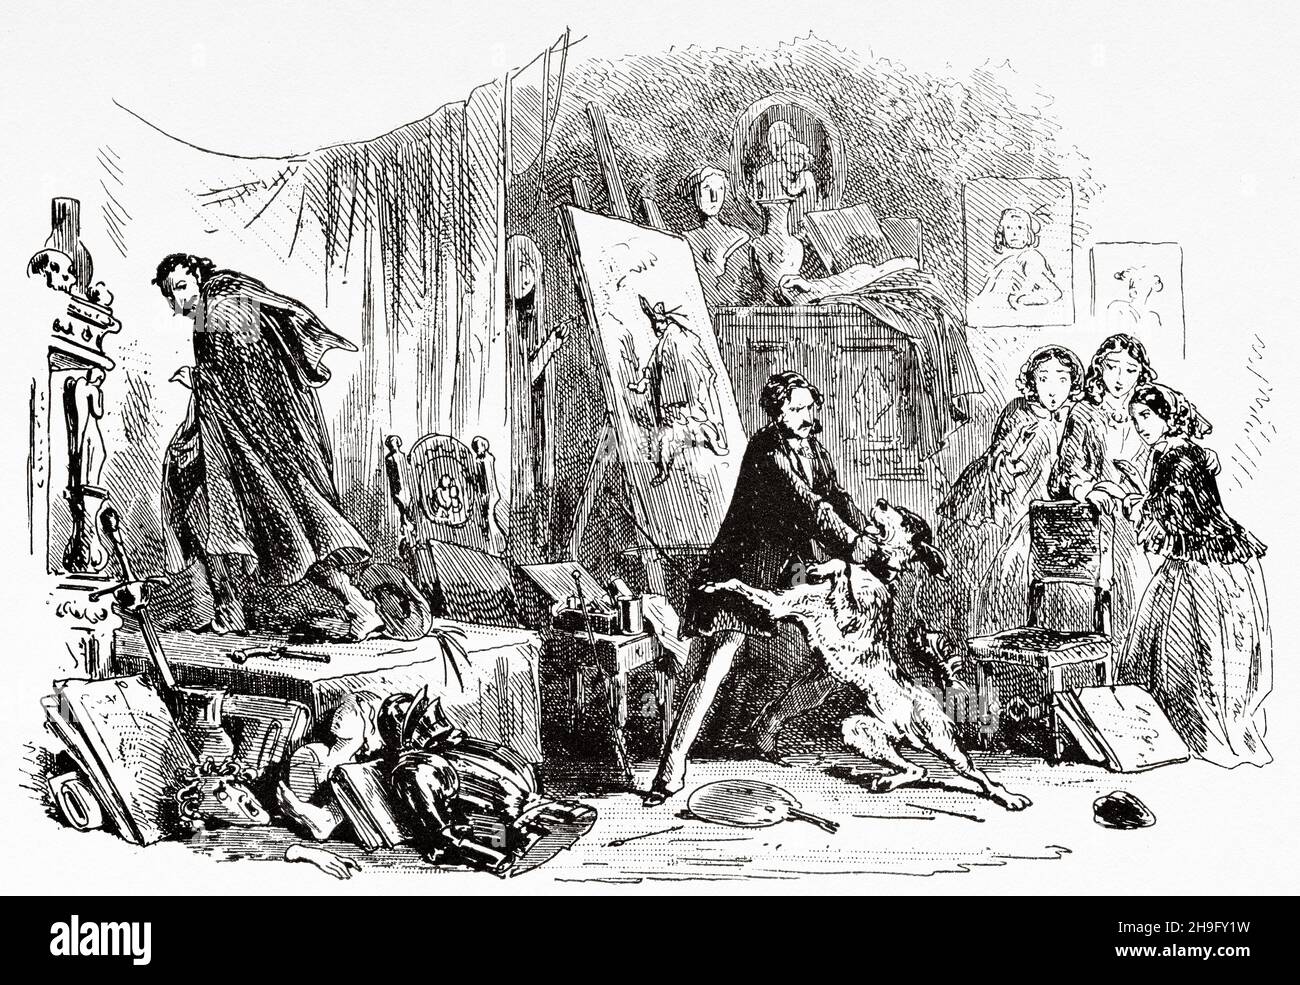 Instinto más fuerte que el entrenamiento. Ilustración de la novela de Charles Dickens Little Dorrit de Hablot Knight Browne (1815-1882) Artista inglés conocido como Phiz Foto de stock